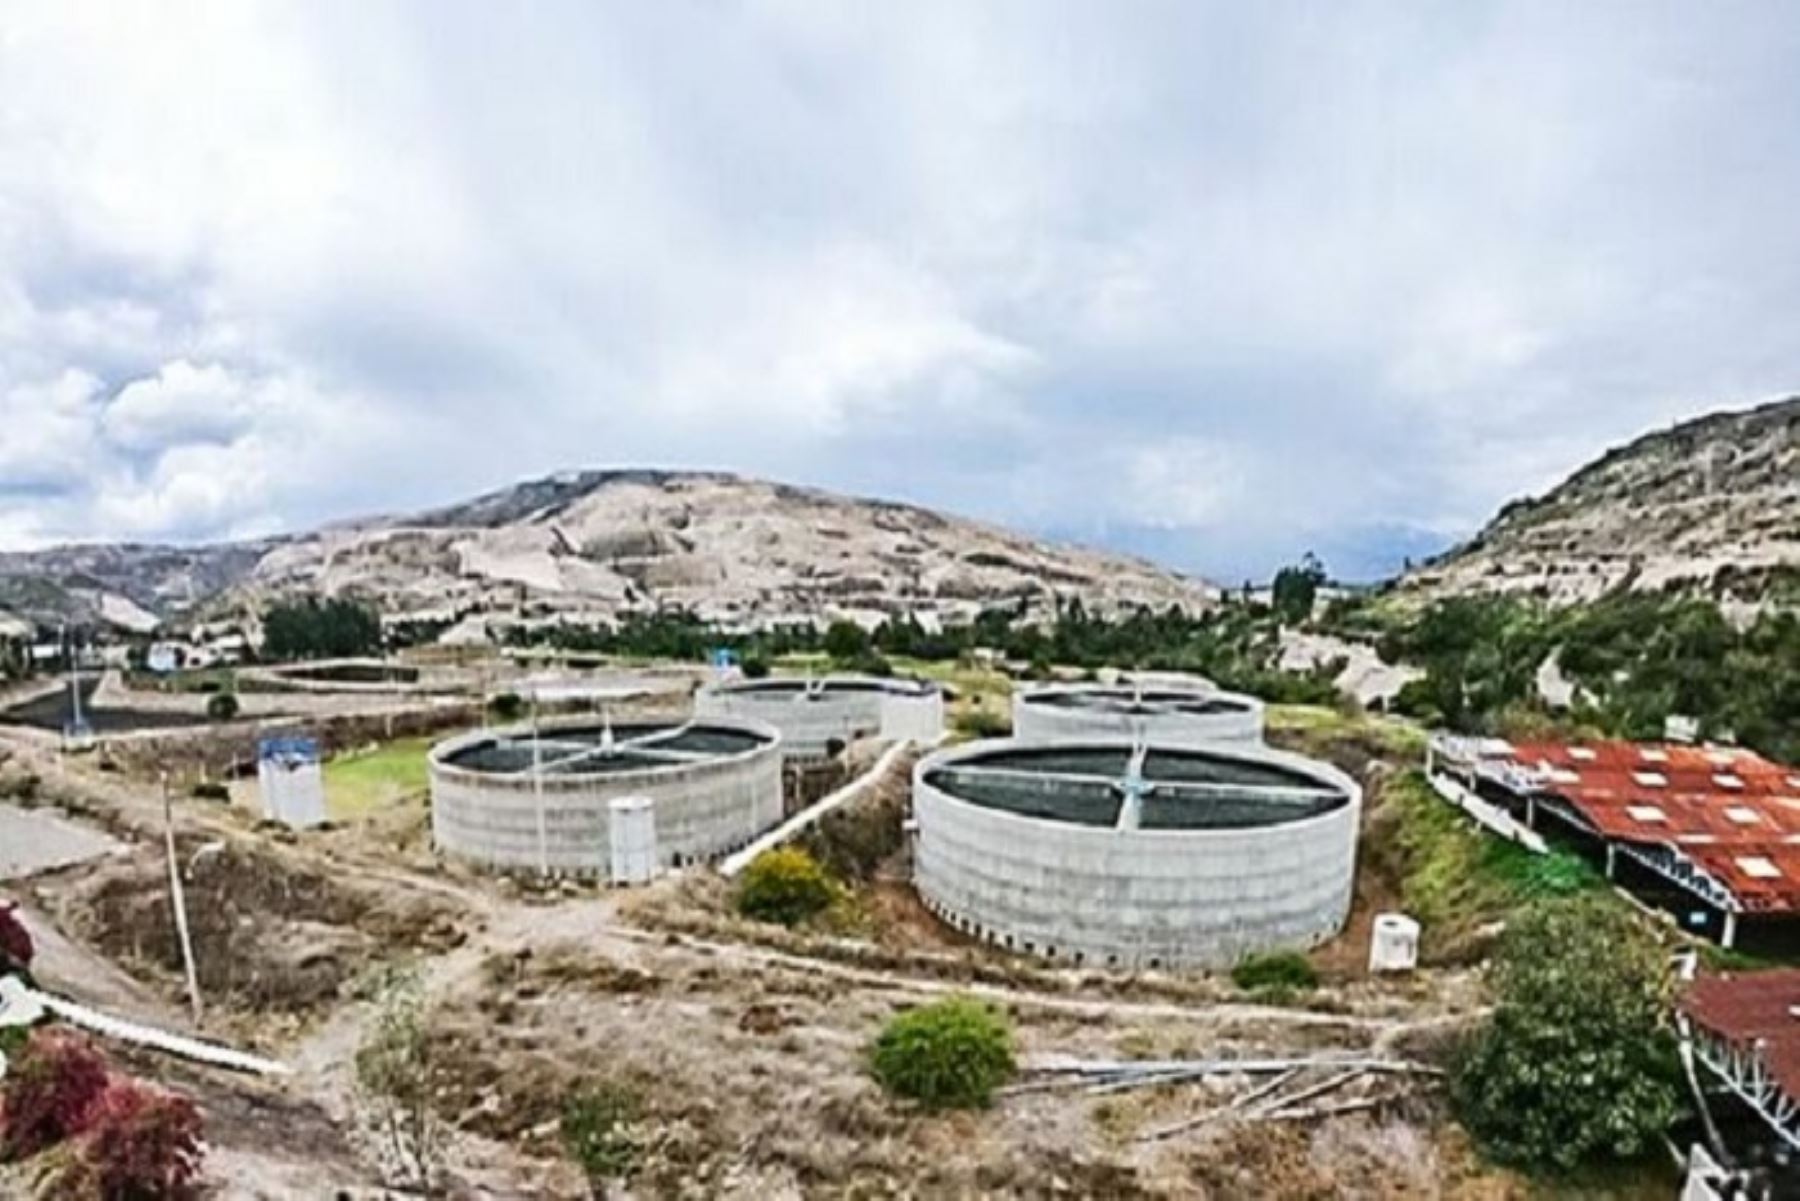 XV curso virtual “Tratamiento de aguas residuales domésticas y municipales para su reúso”, se iniciará el 2 de mayo